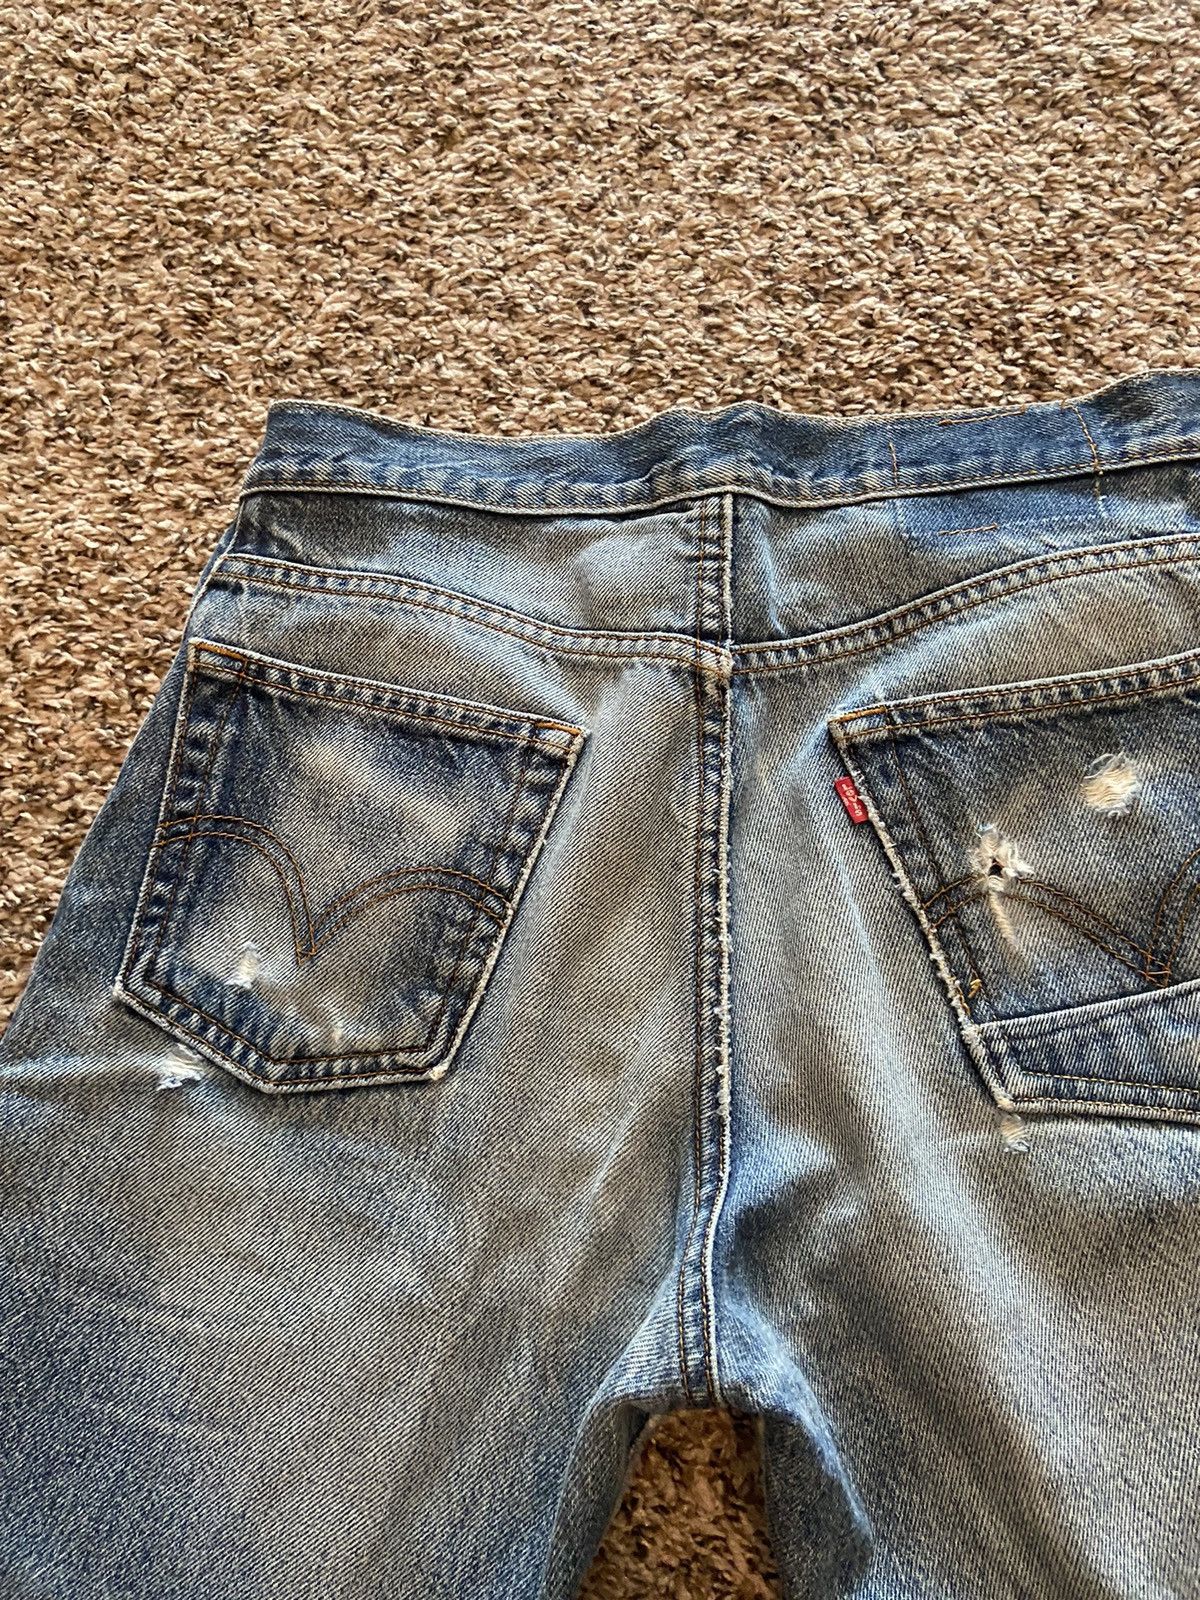 Vintage Vintage Levi’s 505 Distressed Denim Jeans Size US 30 / EU 46 - 8 Thumbnail